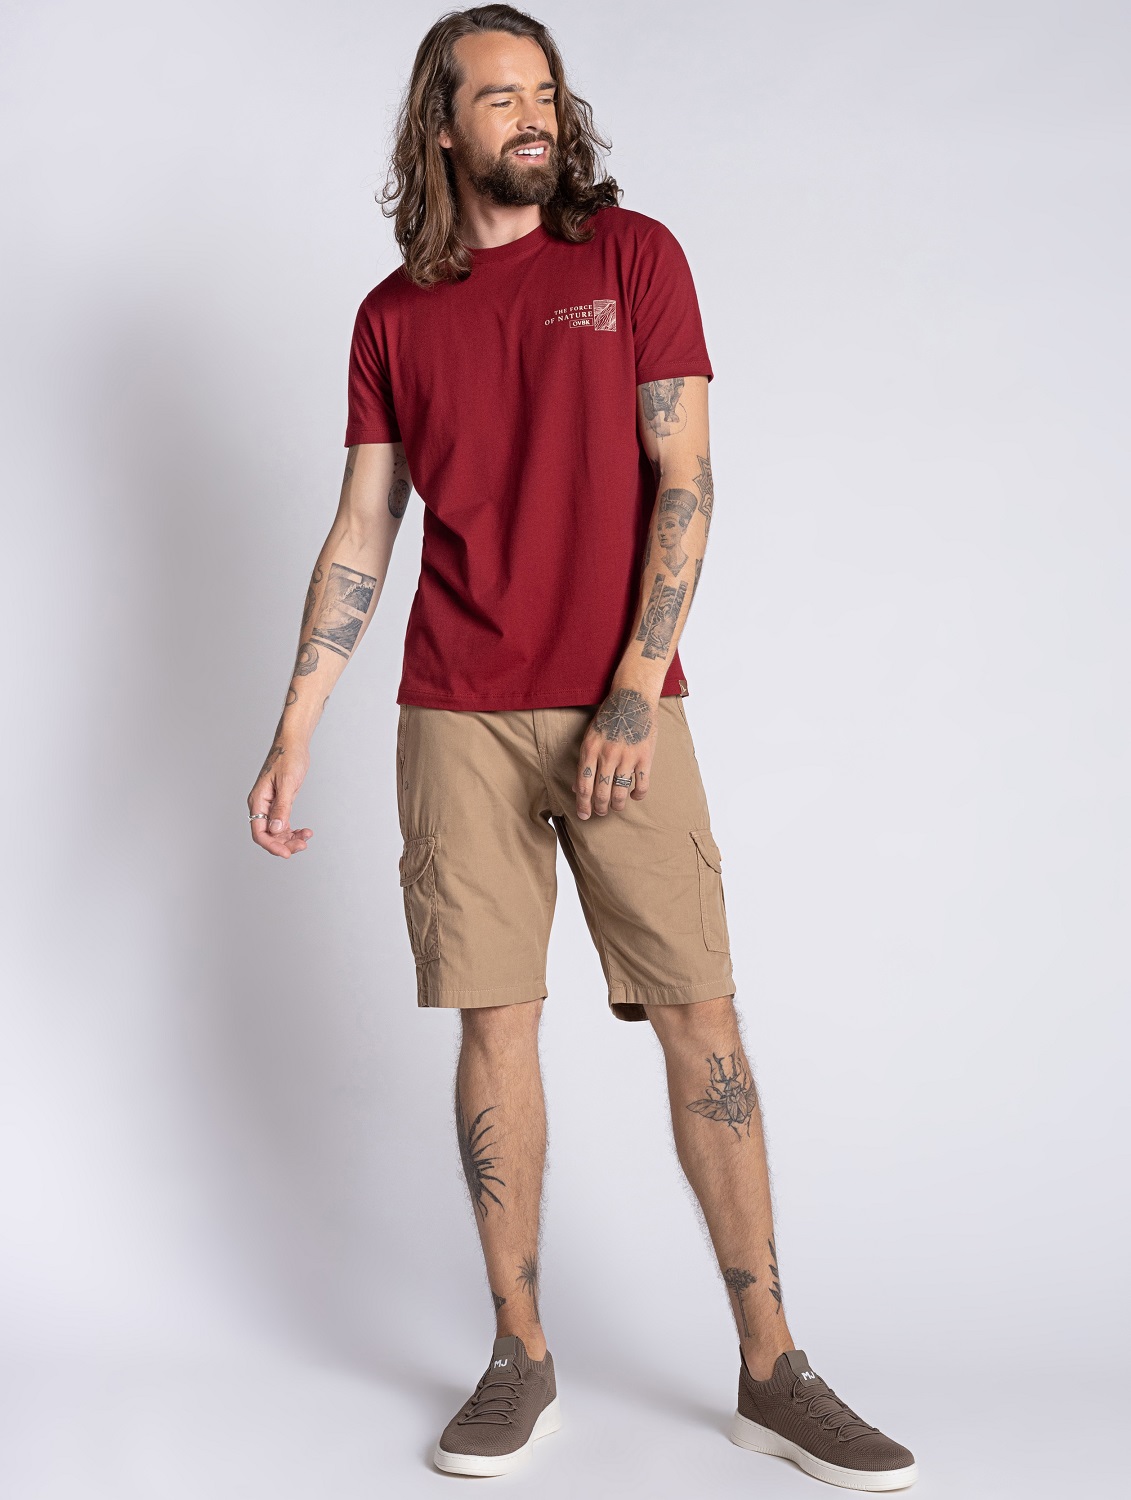 Camiseta Masculina em Algodão Vermelha  - OVBK